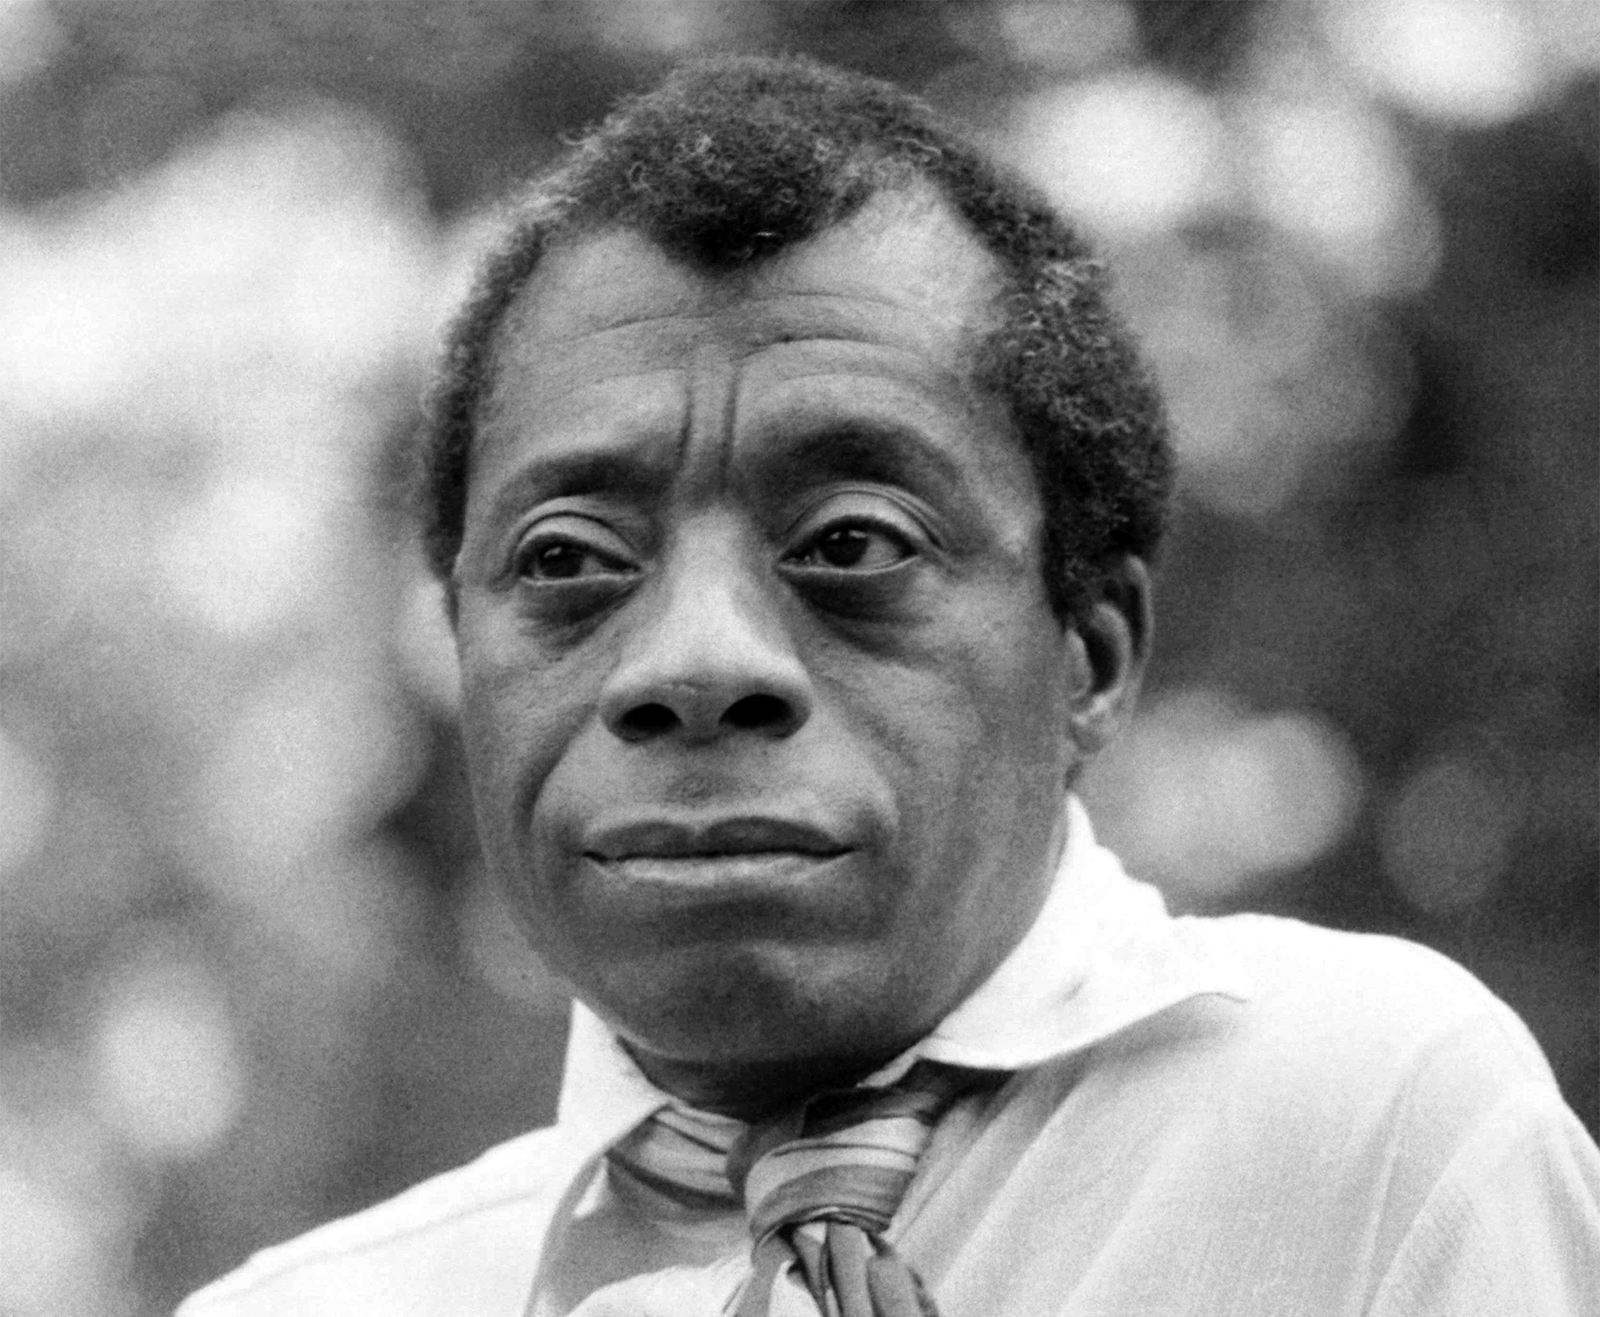 James Baldwin in London in 1969. Photo by Allan Warren/Wikipedia/Creative Commons